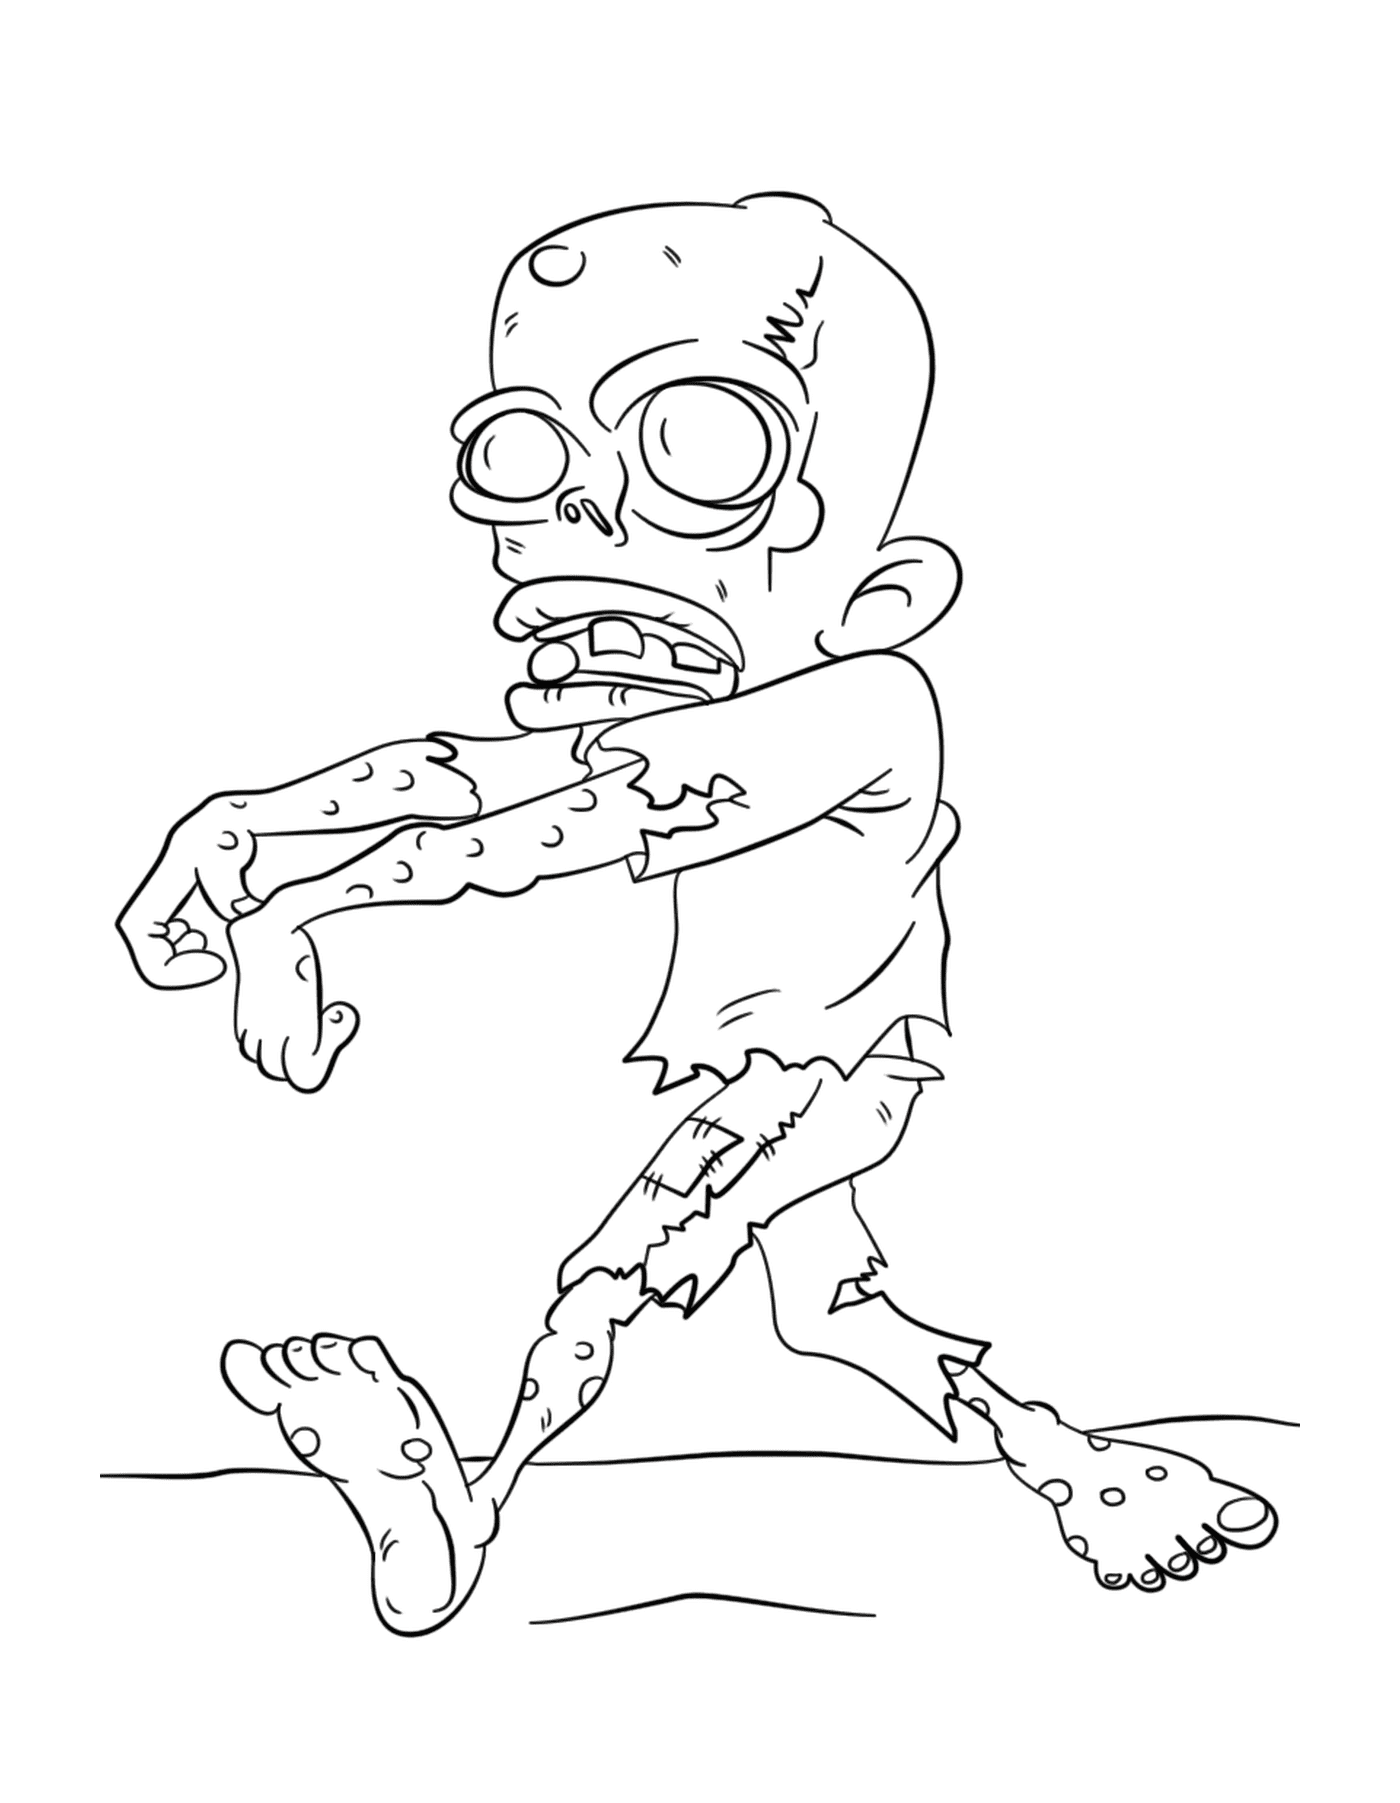   Un zombie marcheur 